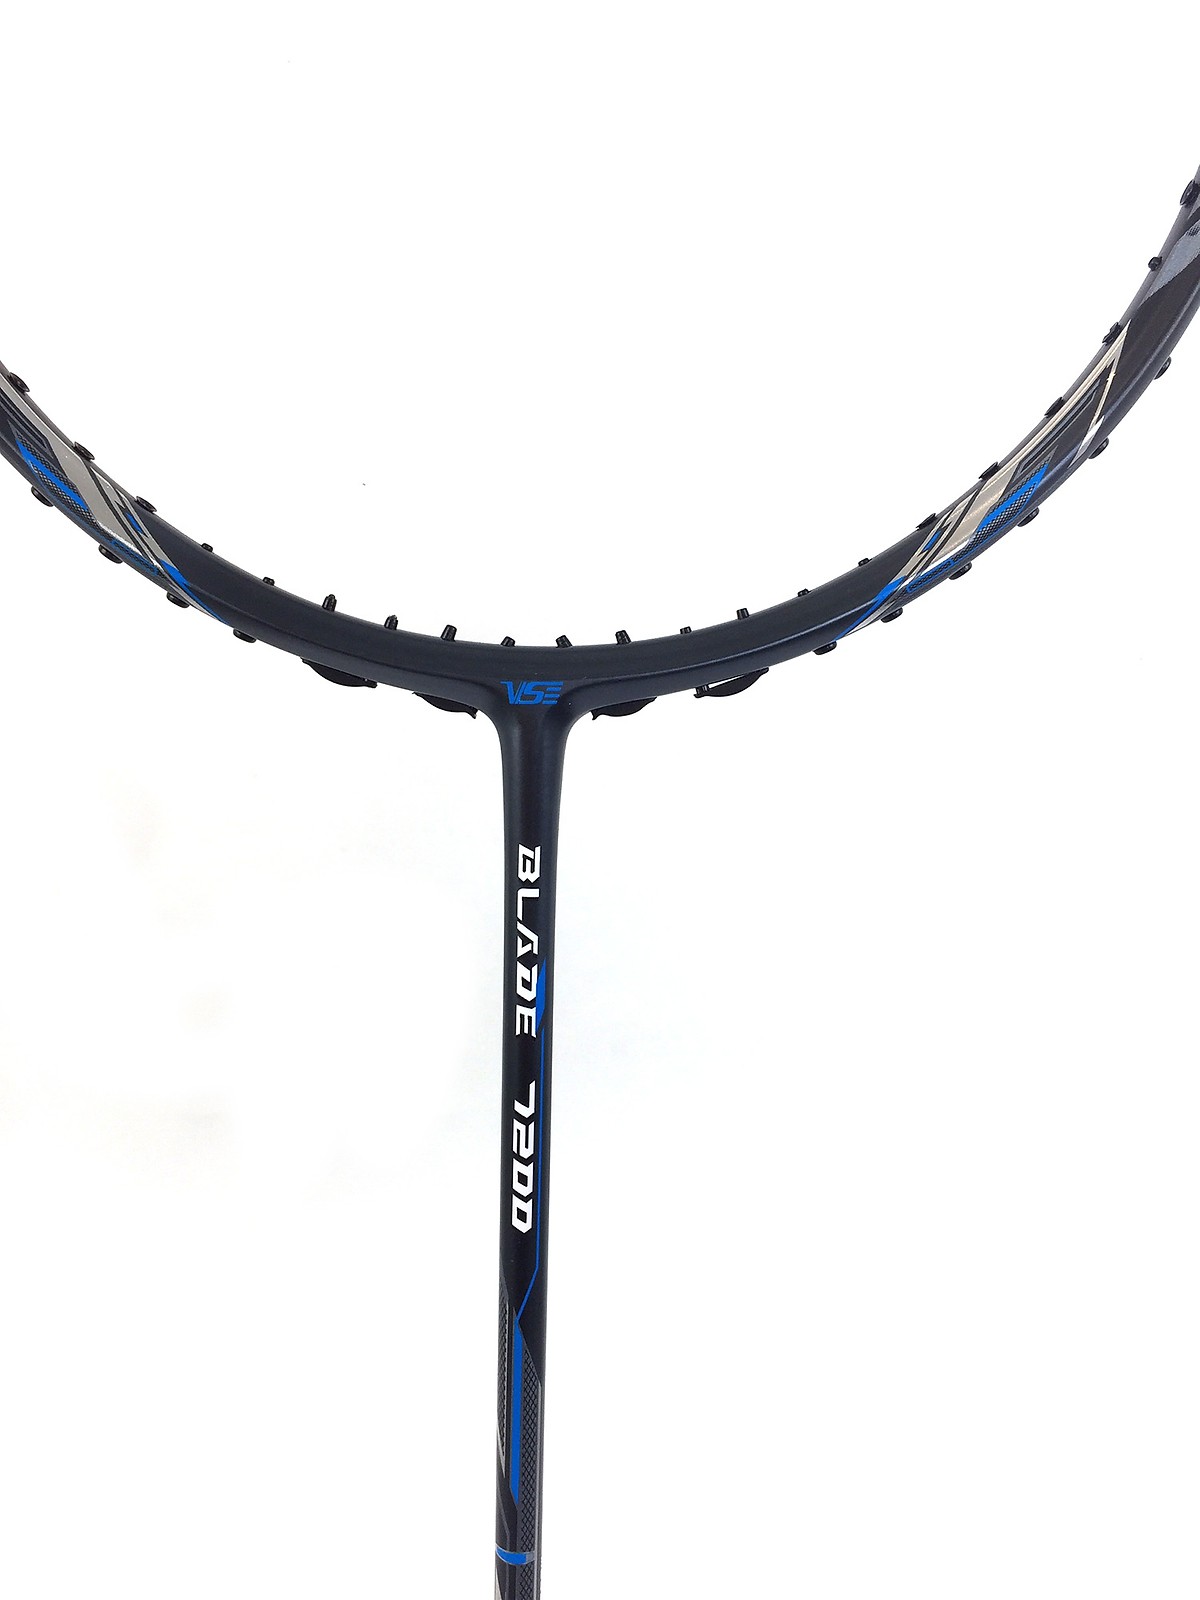 Hình ảnh Vợt Cầu Lông VS 7200 BLADE - Tặng kèm cước + quấn cán vợt -đen pha xanh